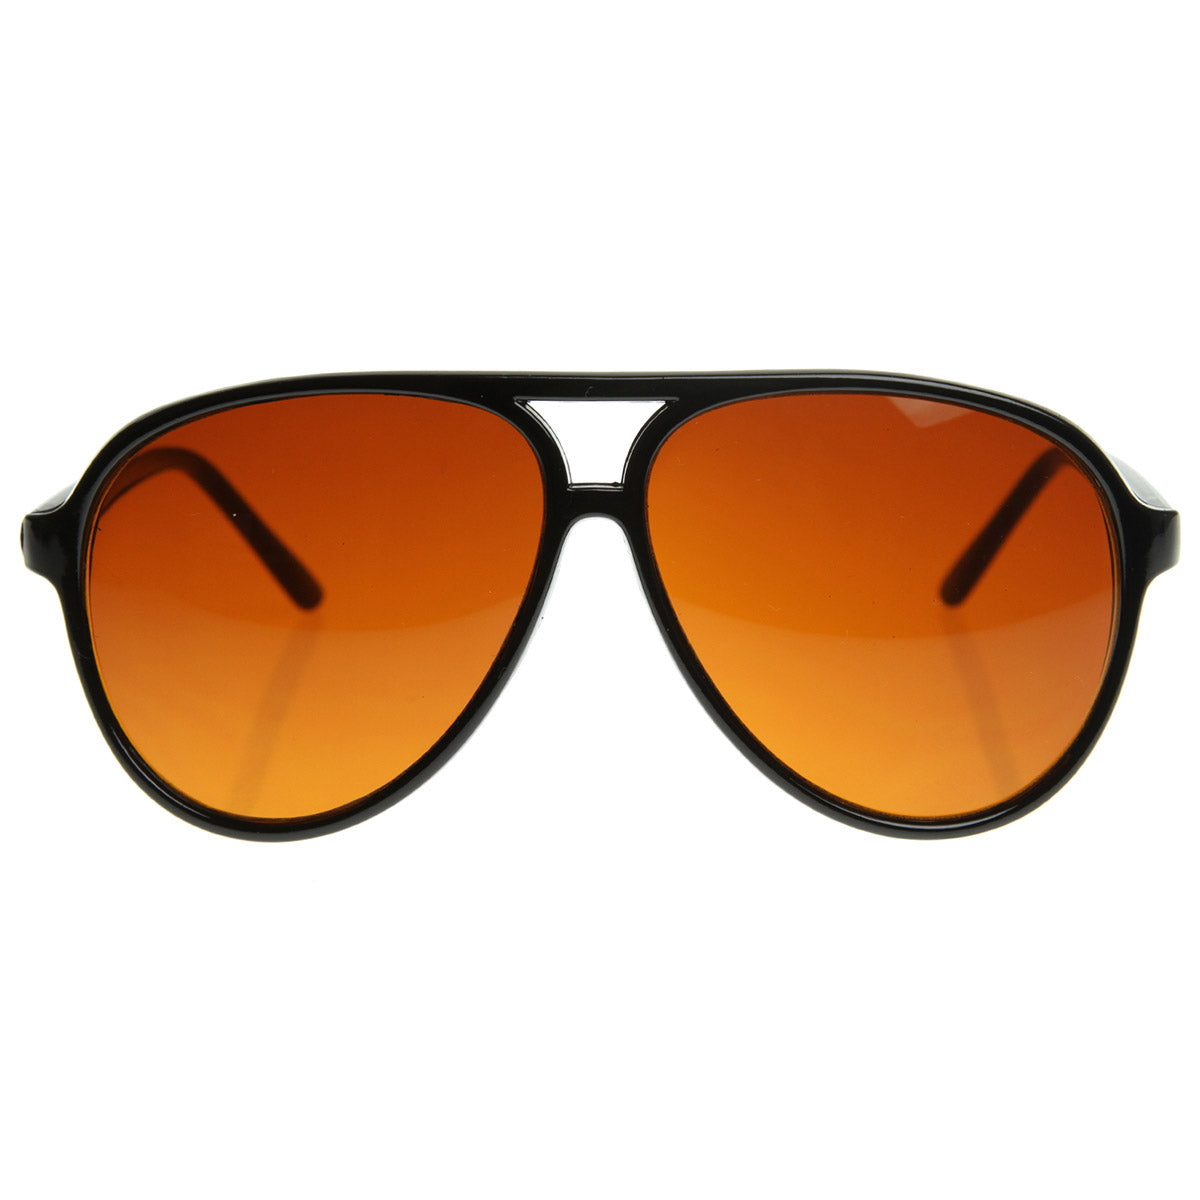 Promotional Retro Sunglasses